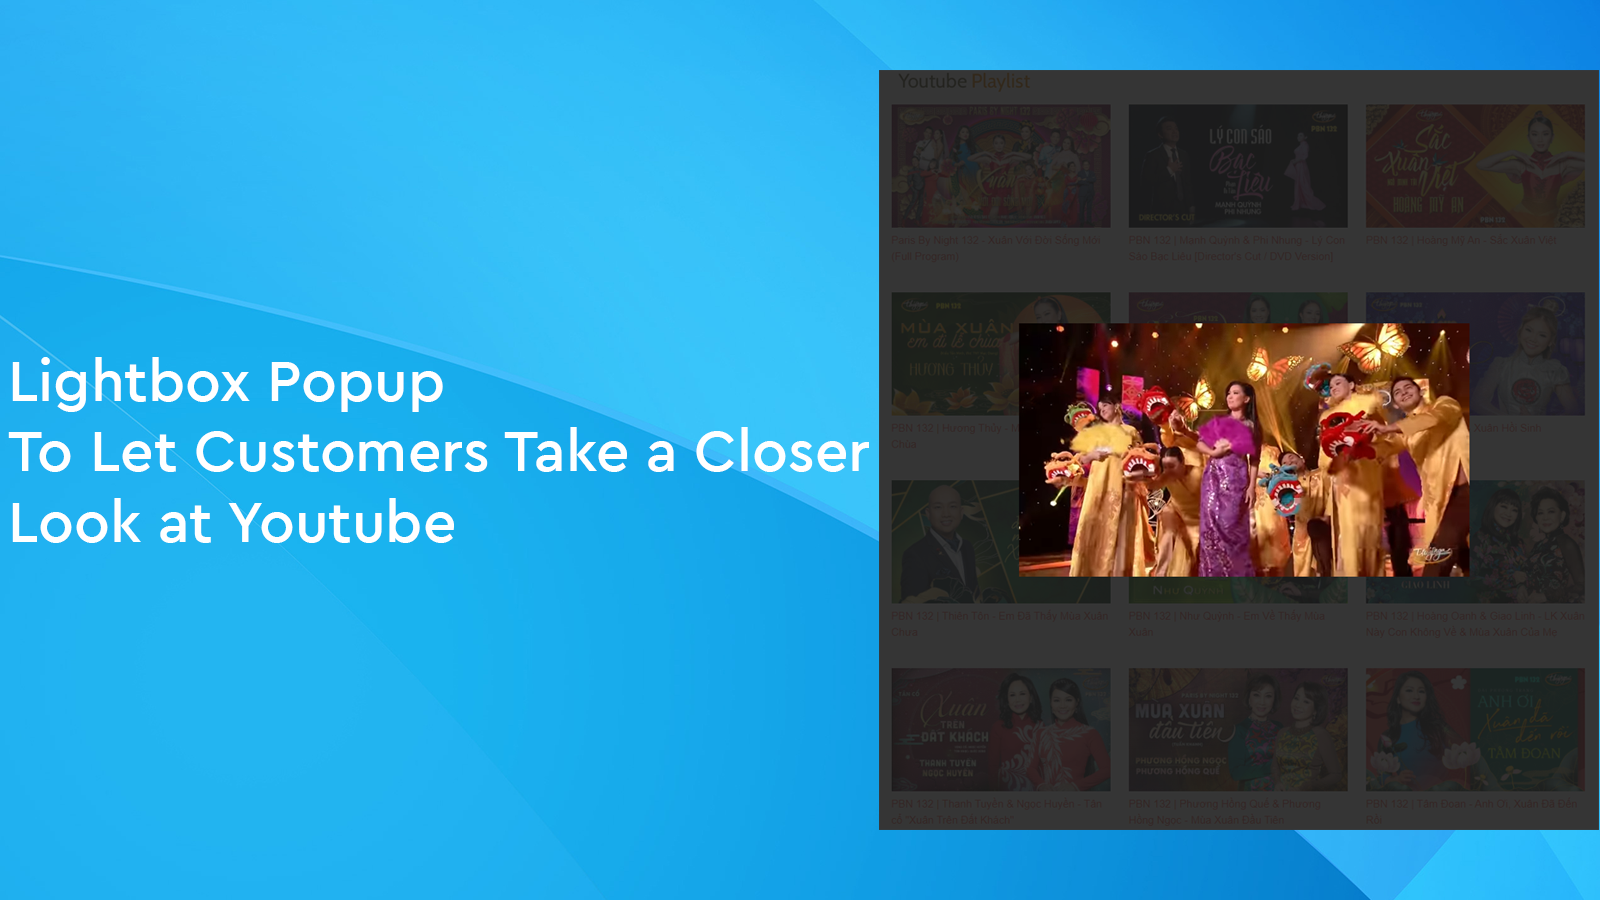 Lightbox-Popup, um Kunden einen genaueren Blick auf Youtube zu ermöglichen